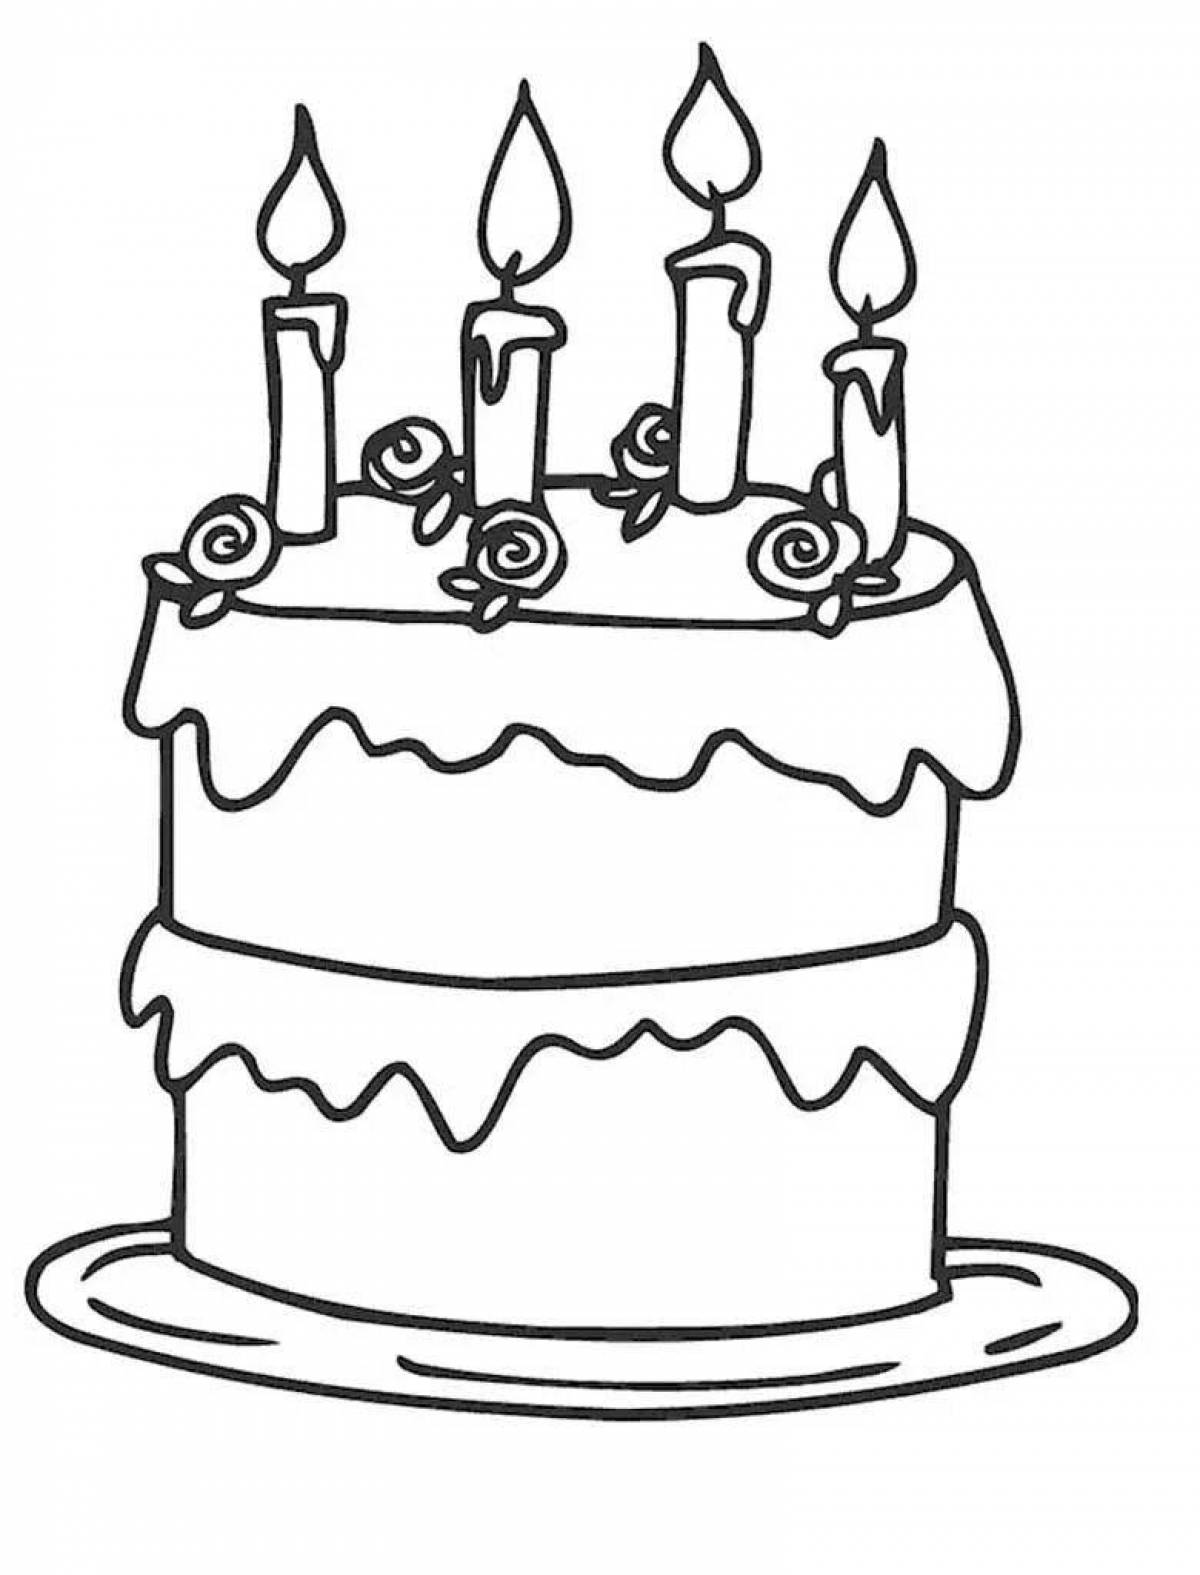 Распечатать картинку на торт. Раскраска торт. Торт раскраска для детей. Раскраска торт на день рождения. Торт разукрашка для детей.